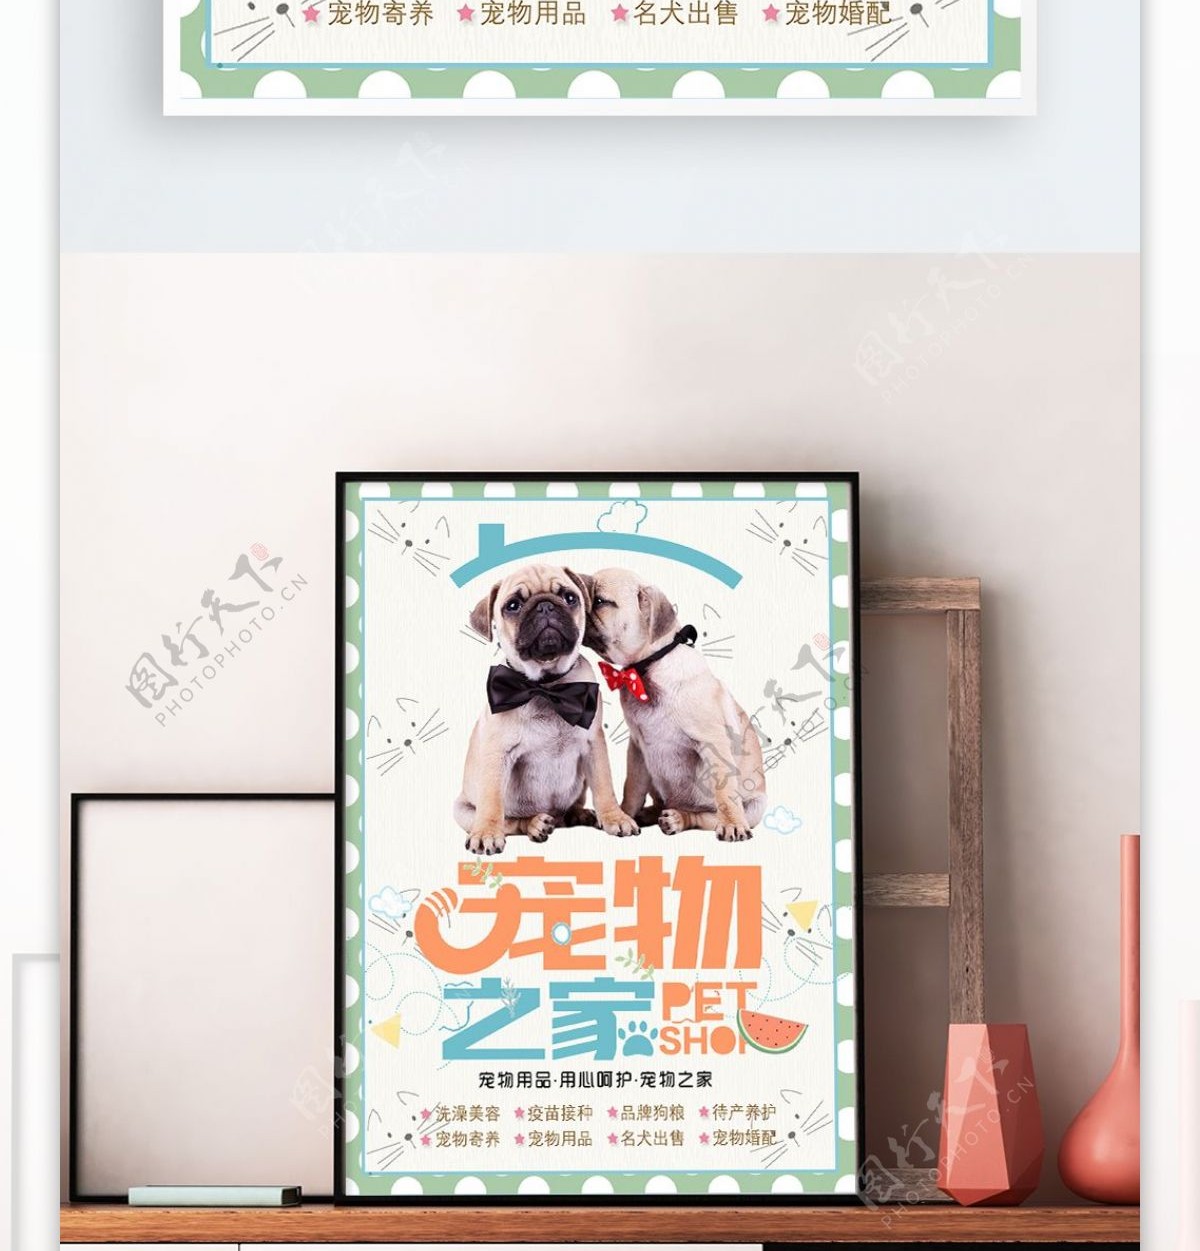 2018年清新可爱宠物之家海报